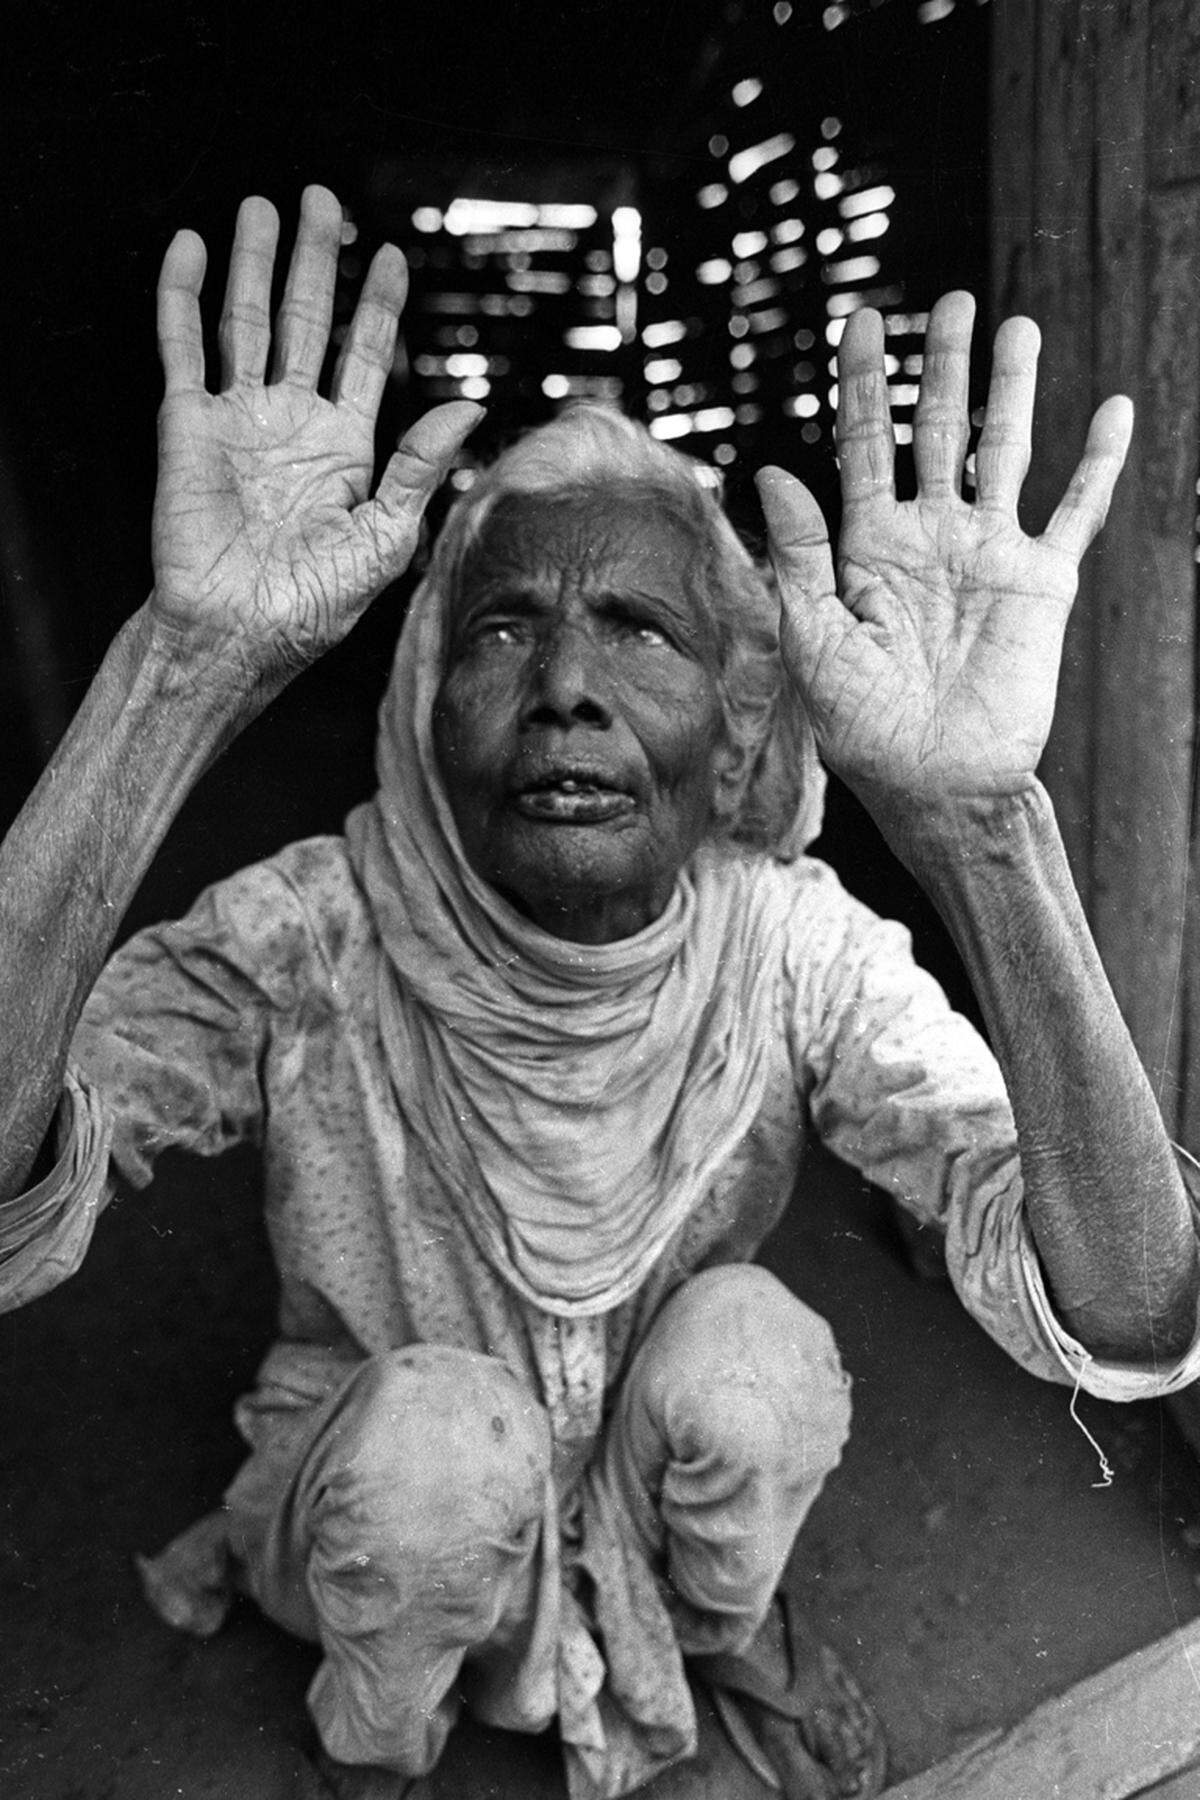 Es war der größte Chemieunfall in der Geschichte, mit mehr Todesopfern als in Tschernobyl, doch der Name "Bhopal" ist auf der Welt wohl nicht halb so bekannt wie jener des stillgelegten Kernkraftwerks. Vor 30 Jahren explodierten in einer Fabrik in der indischen Stadt Tonnen des hochgiftigen Methylisocyanat. Etwa 25.000 Menschen starben, die Überlebenden leiden noch heute an den Folgen.(Bild: Eine bei dem Unglück erblindete Bewohnerin Bhopals)